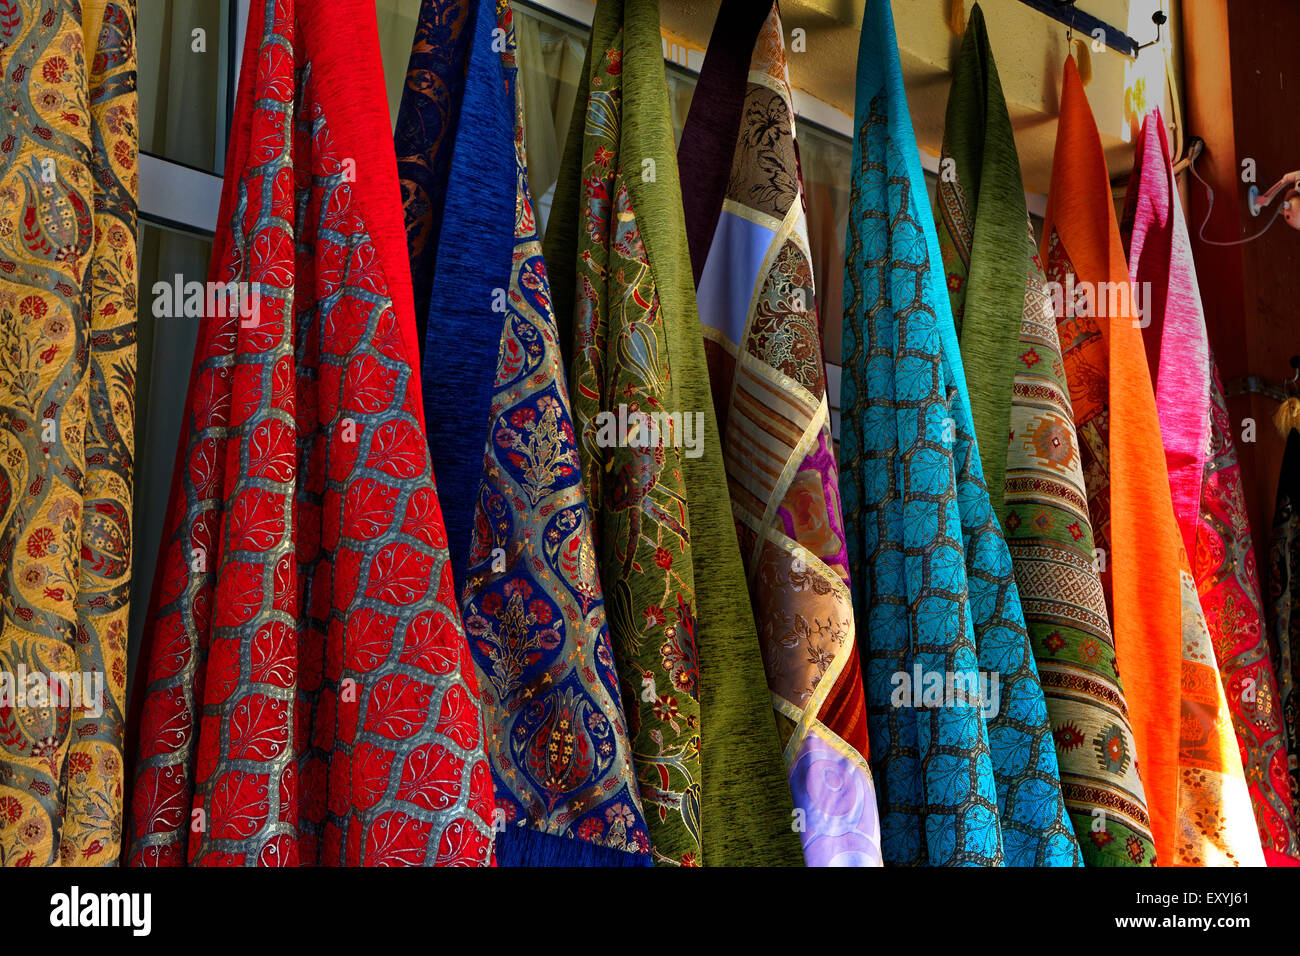 Telas artesanales en una tienda en Estambul, Turquía. Foto de stock